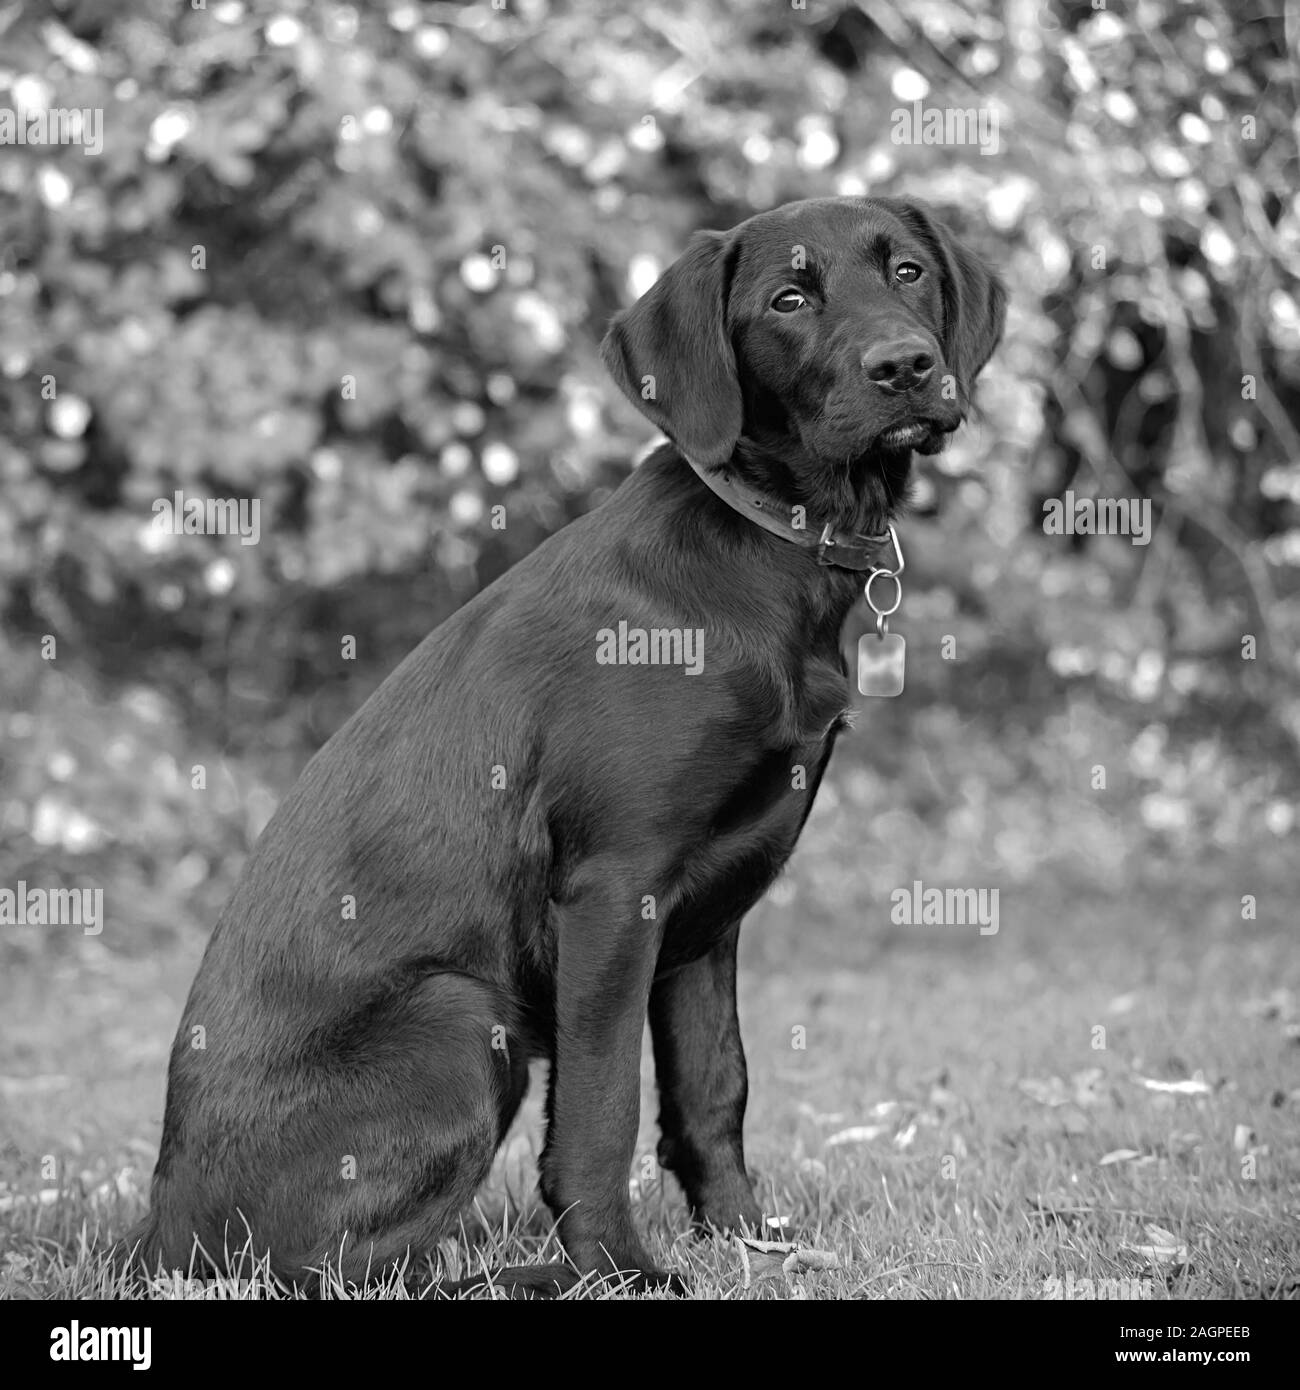 Contro una offuscata soft-focalizzata sullo sfondo, un giovane Labrador si trova pronto durante outdoor training, gli occhi luminosi e fissa, anticipando il comando successivo. Foto Stock